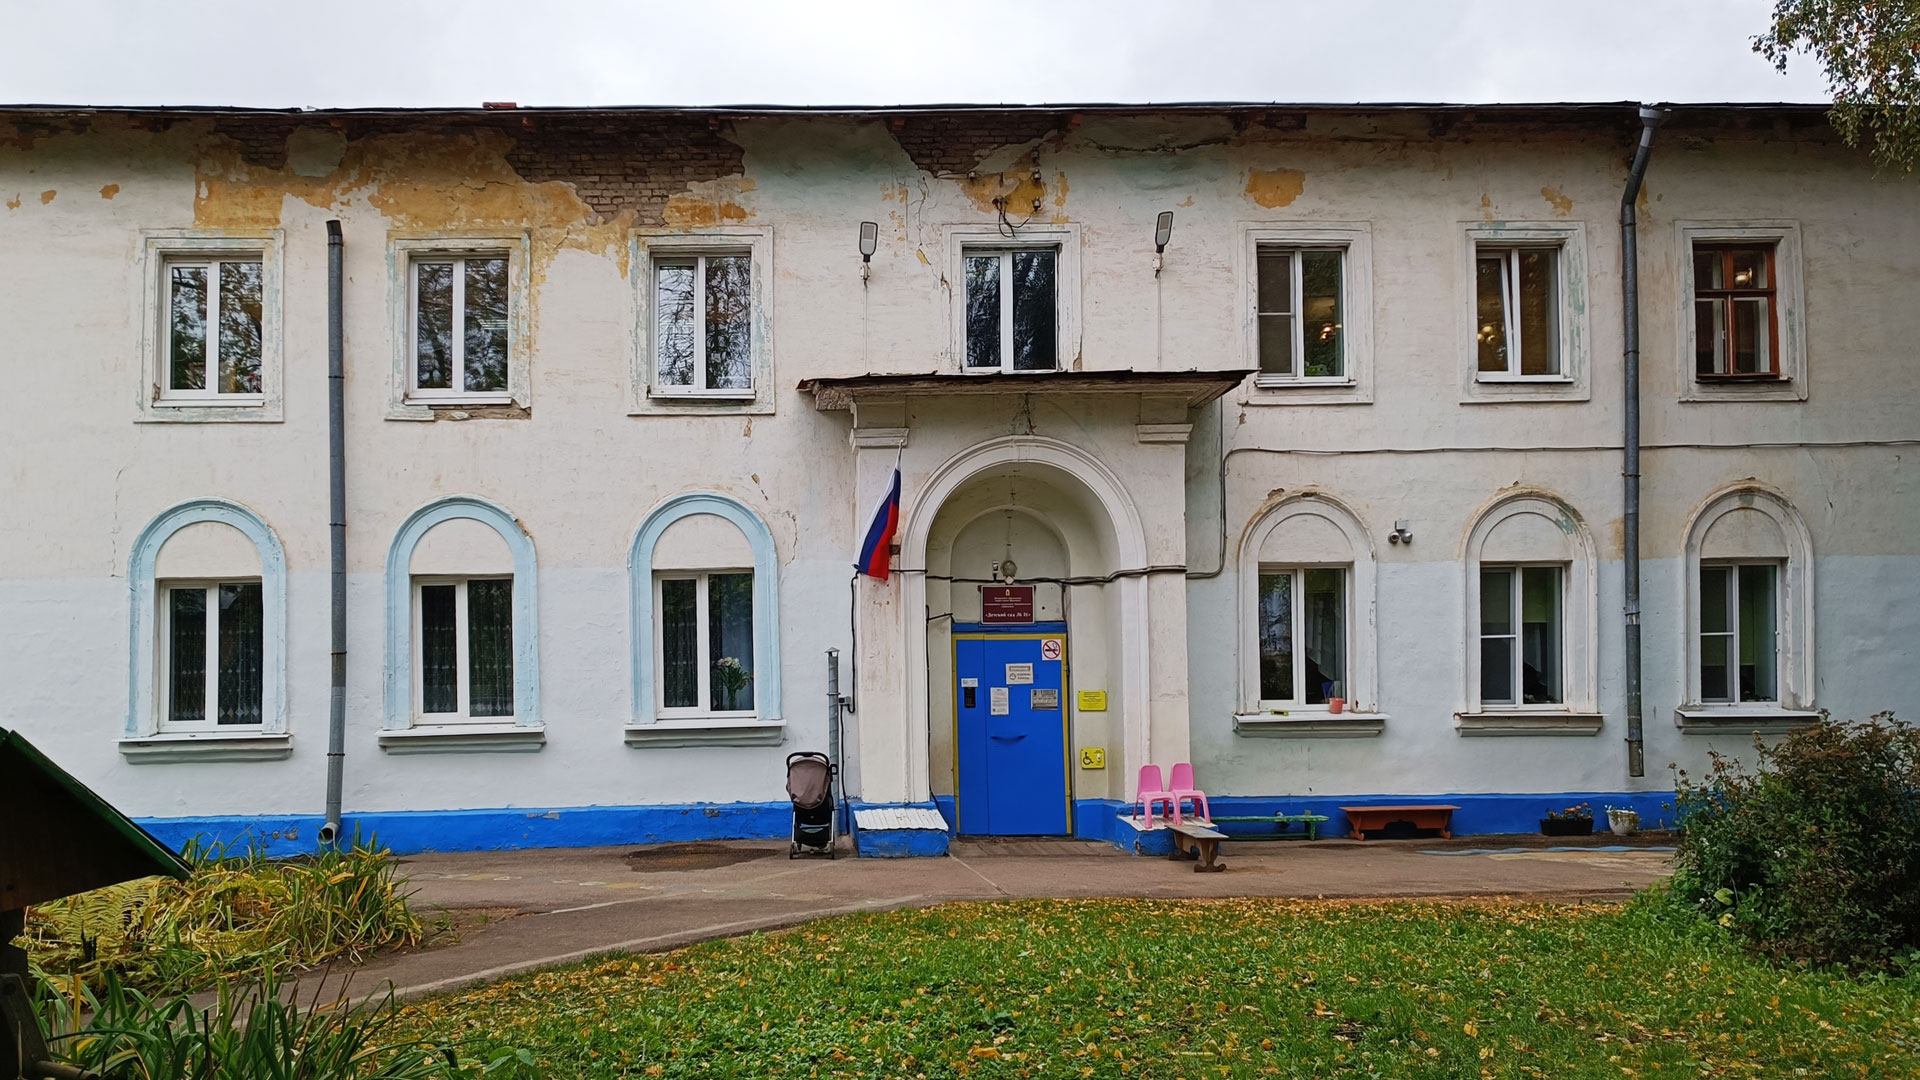 Детский сад 21 Ярославль: главный вход в здание садика.